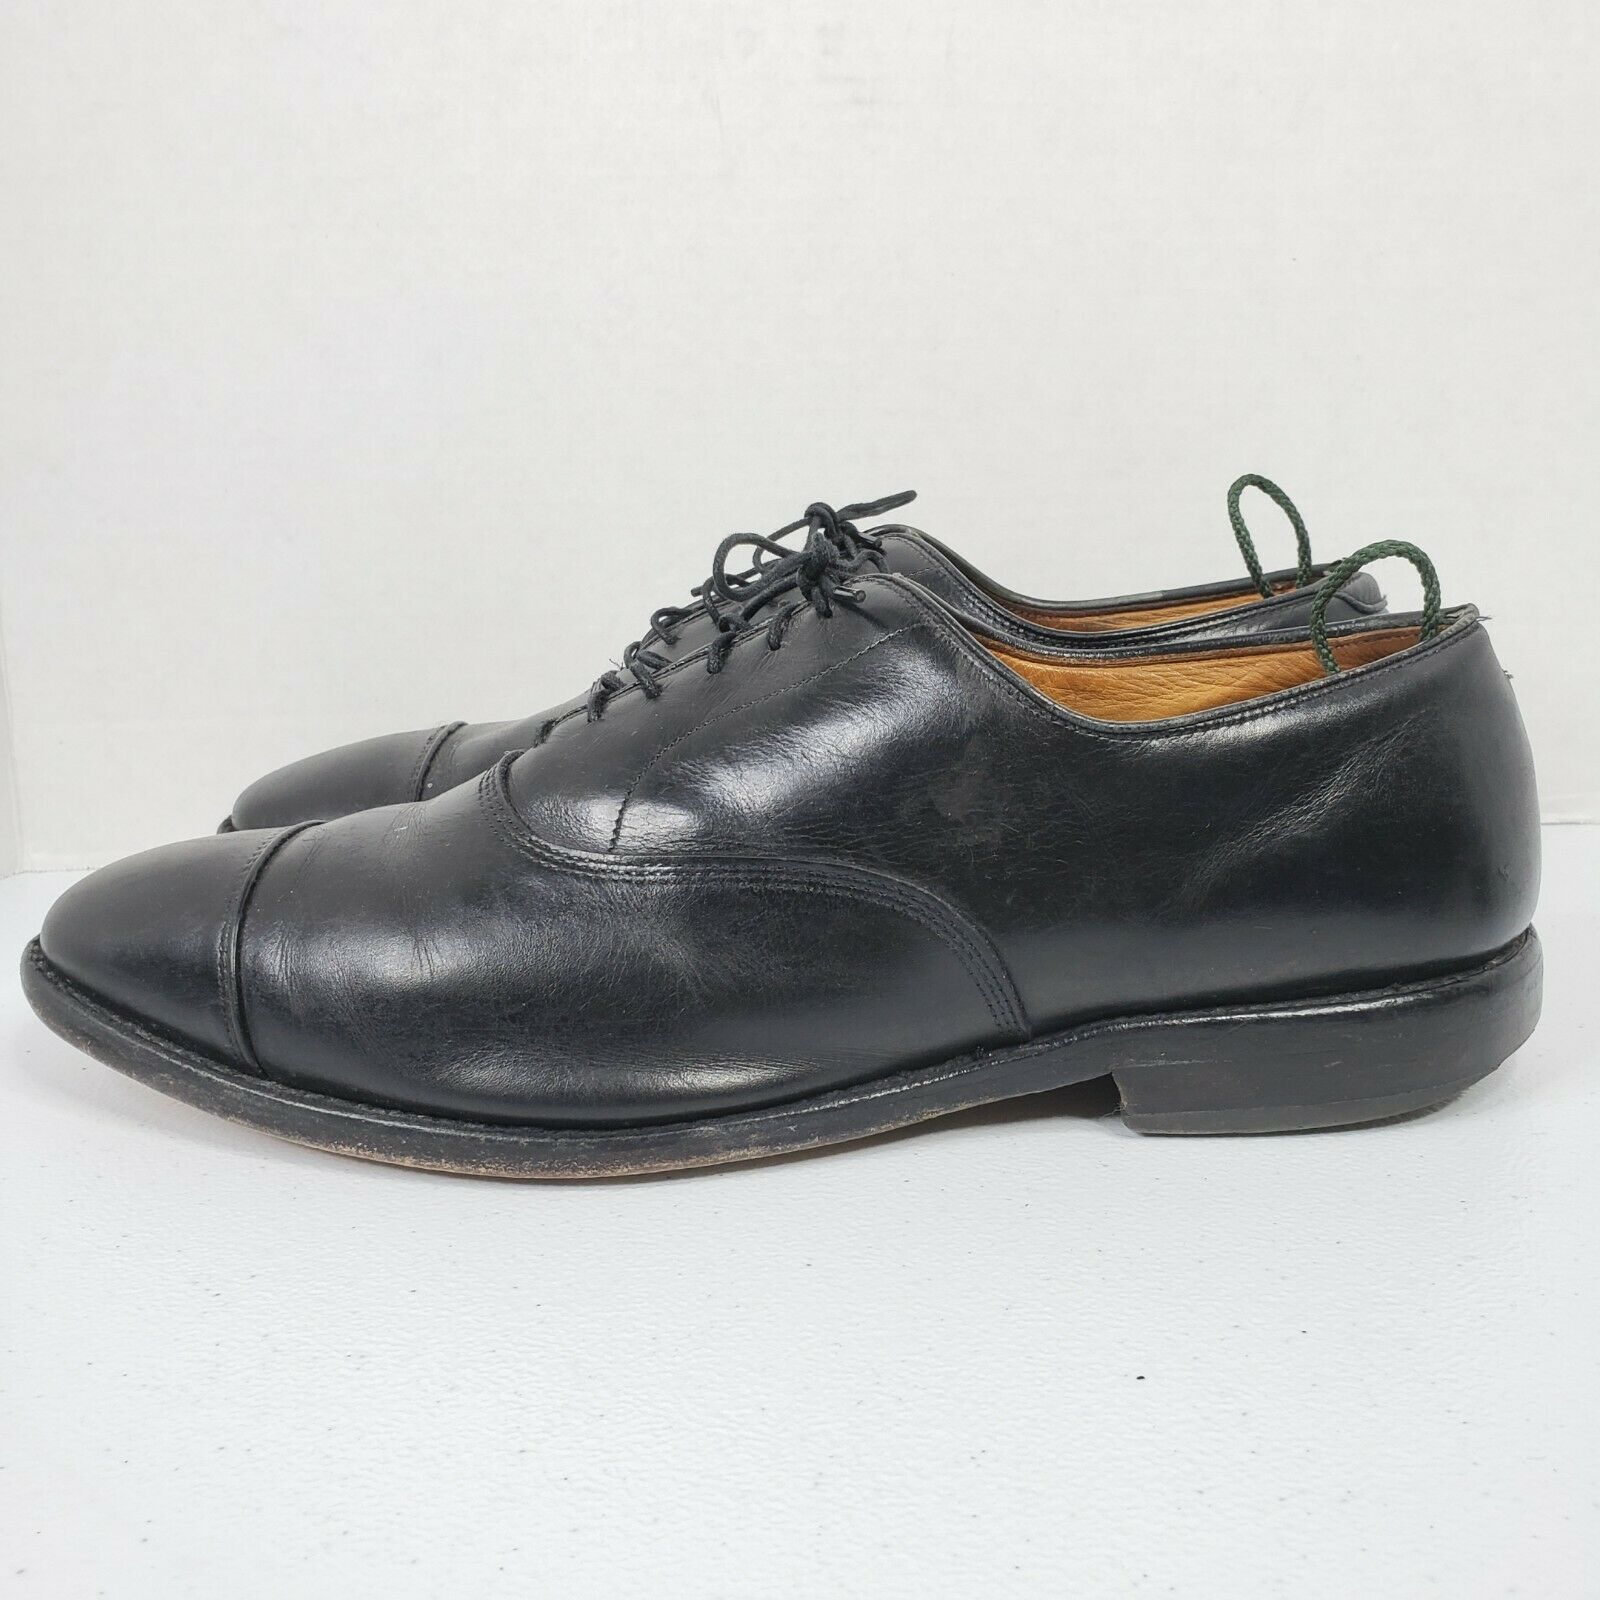 Allen Edmonds Park Avenue Dress Shoes 10.5 EEE Black Leather Cap Toe Oxford